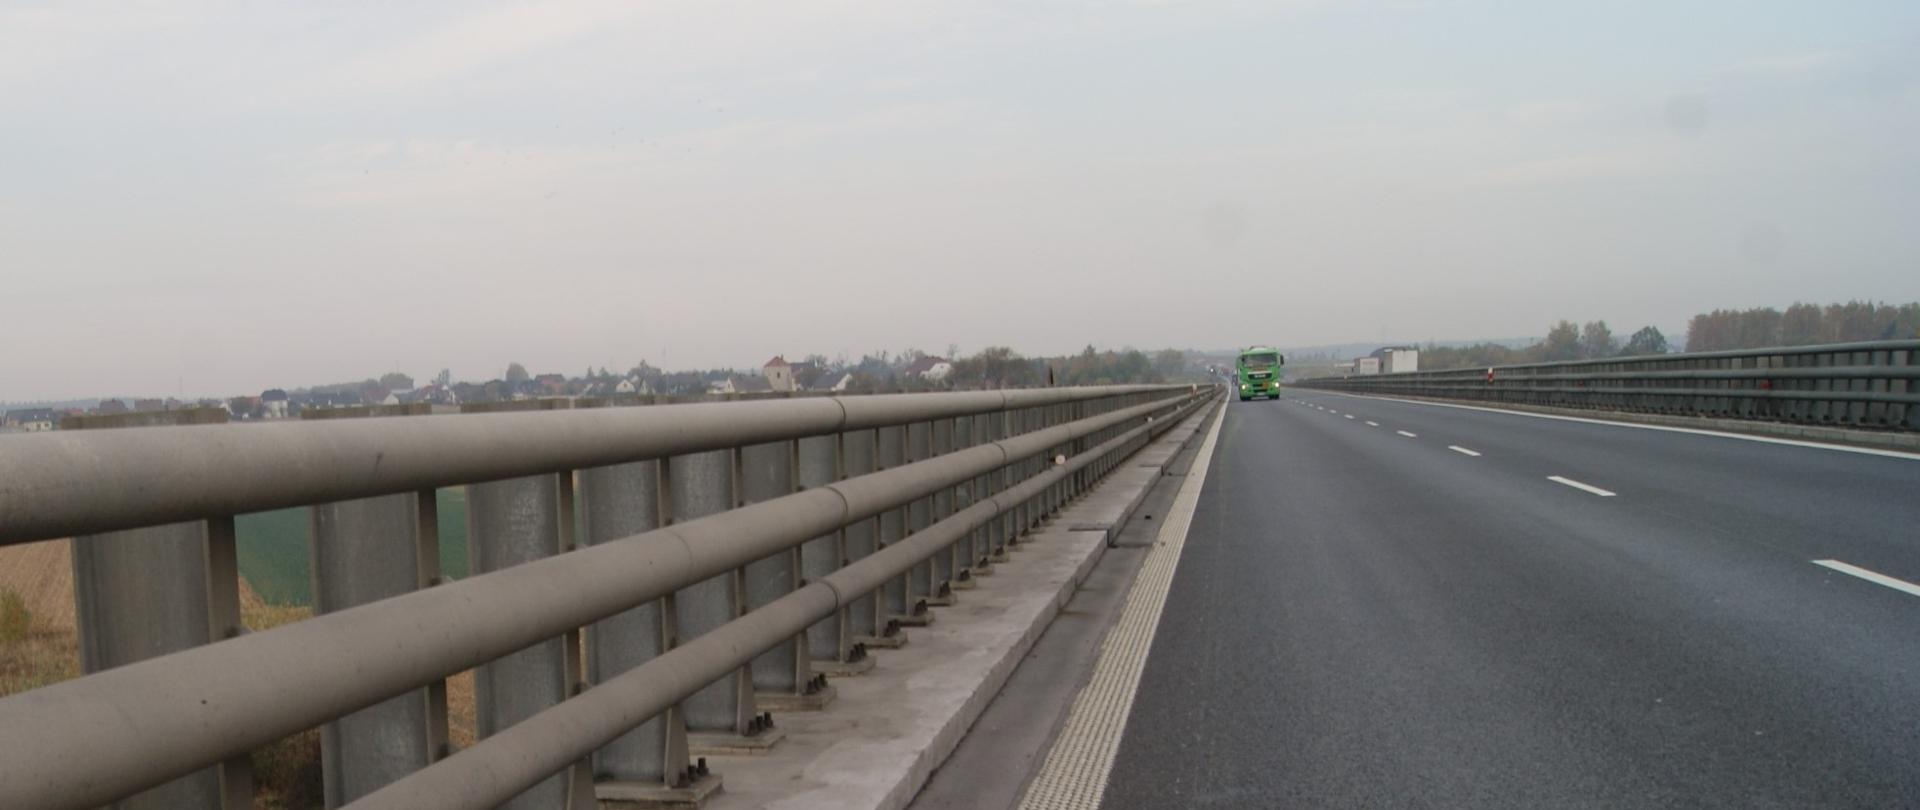 Obiekt mostowy na autostradzie A4 w Rogowie Opolskim